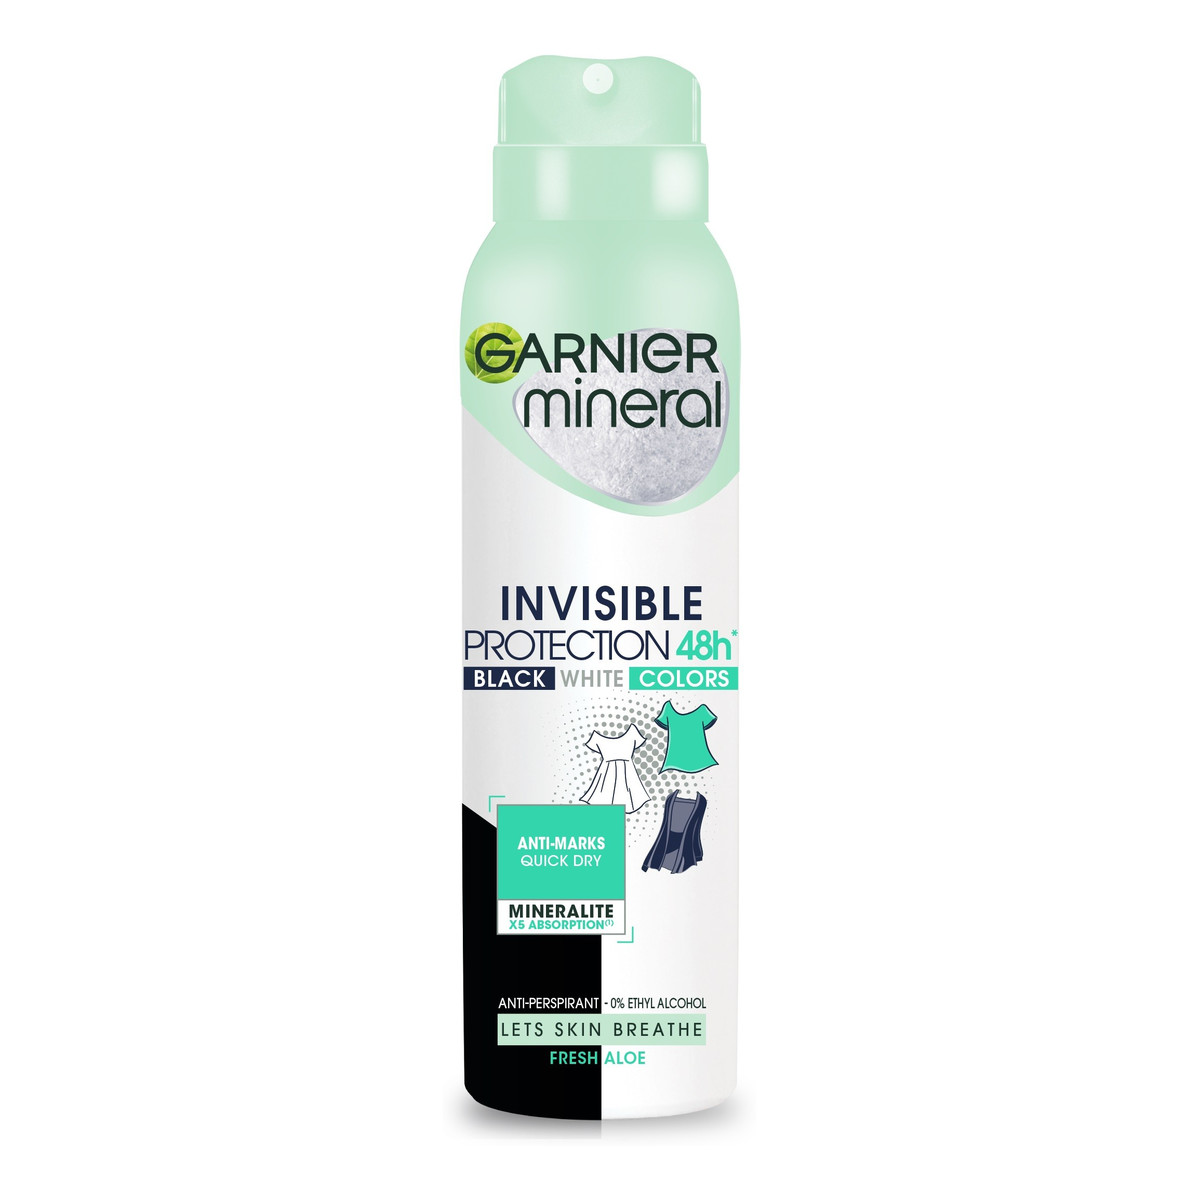 Garnier Mineral Dezodorant spray Invisible Protection 48h Fresh Aloe - Black White Colors 150ml